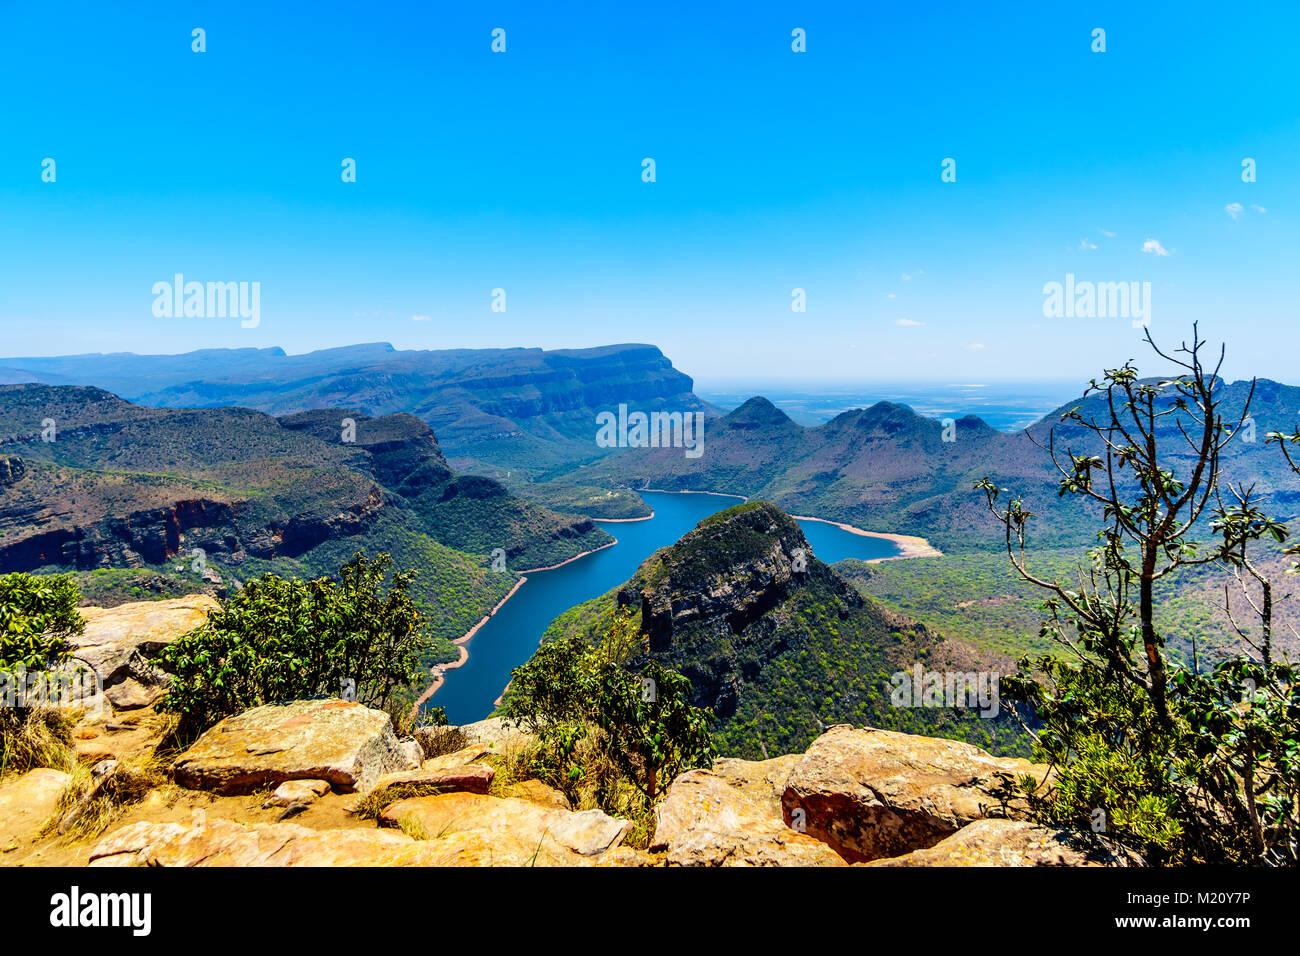 Blick auf das highveld und den Blyde River Stausee in der Blyde River Canyon, entlang der Panorama Route in Mpumalanga Provinz von Südafrika Stockfoto